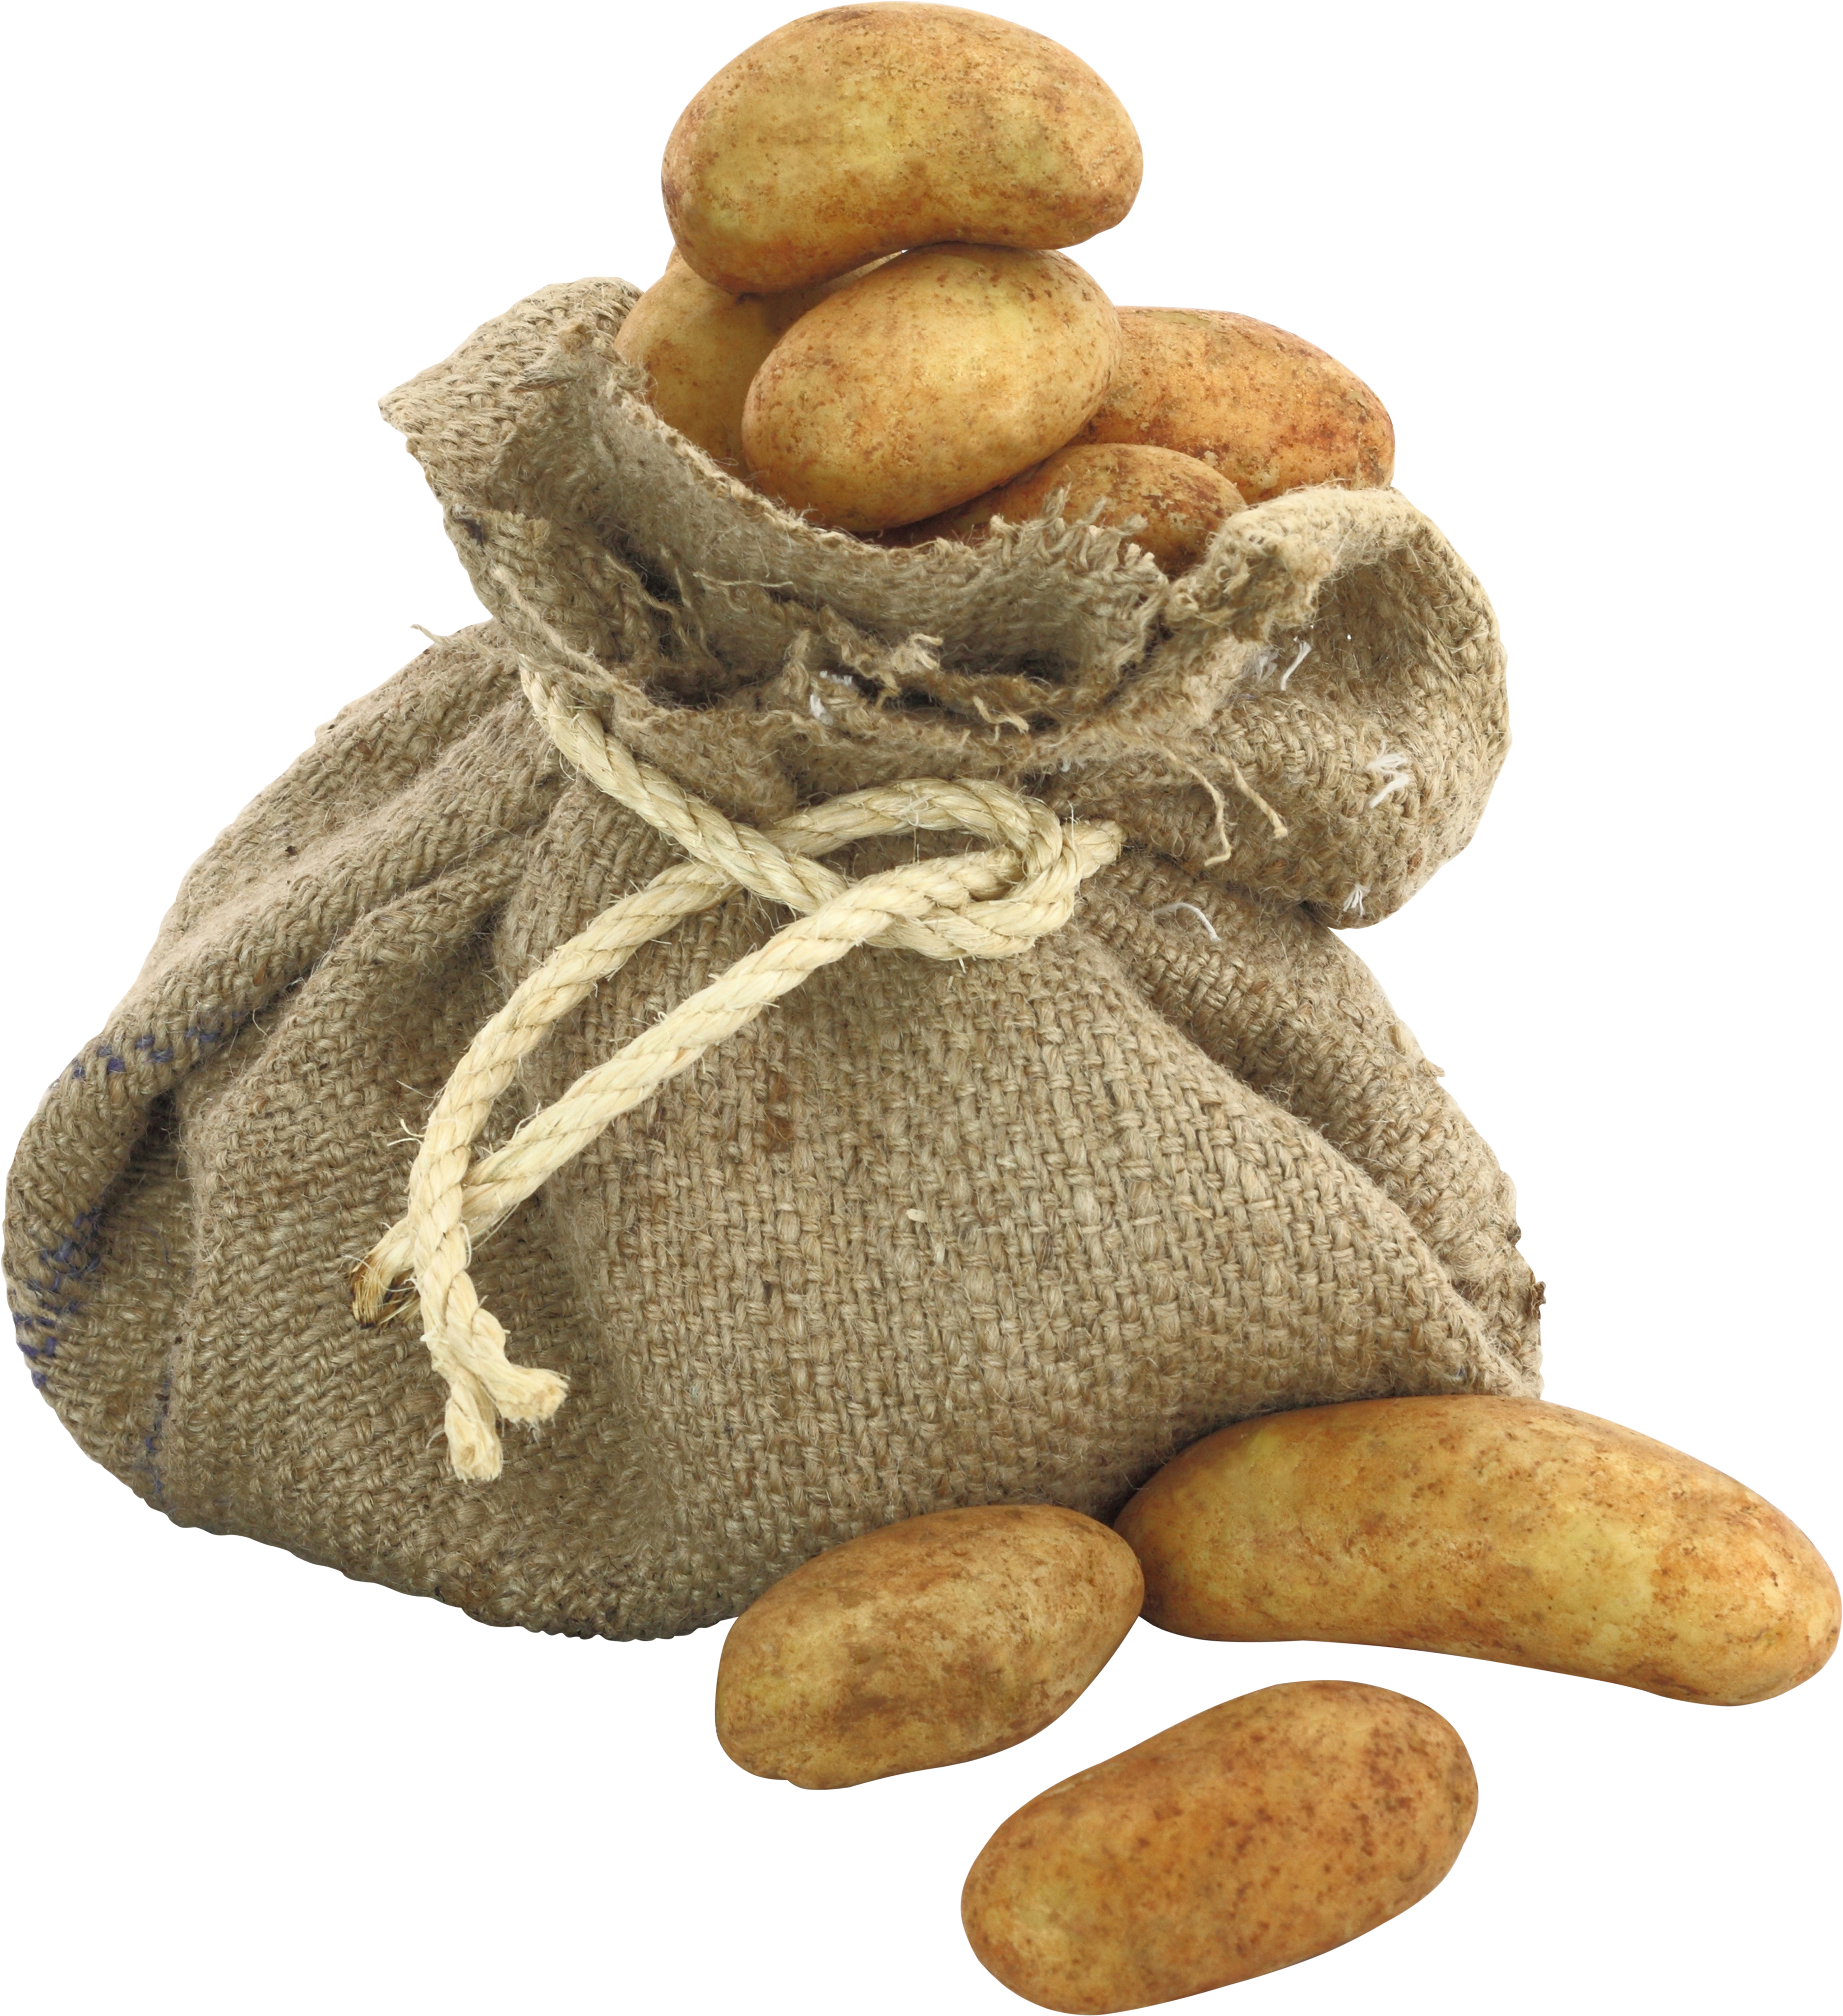 Kartoffeln in der Tüte